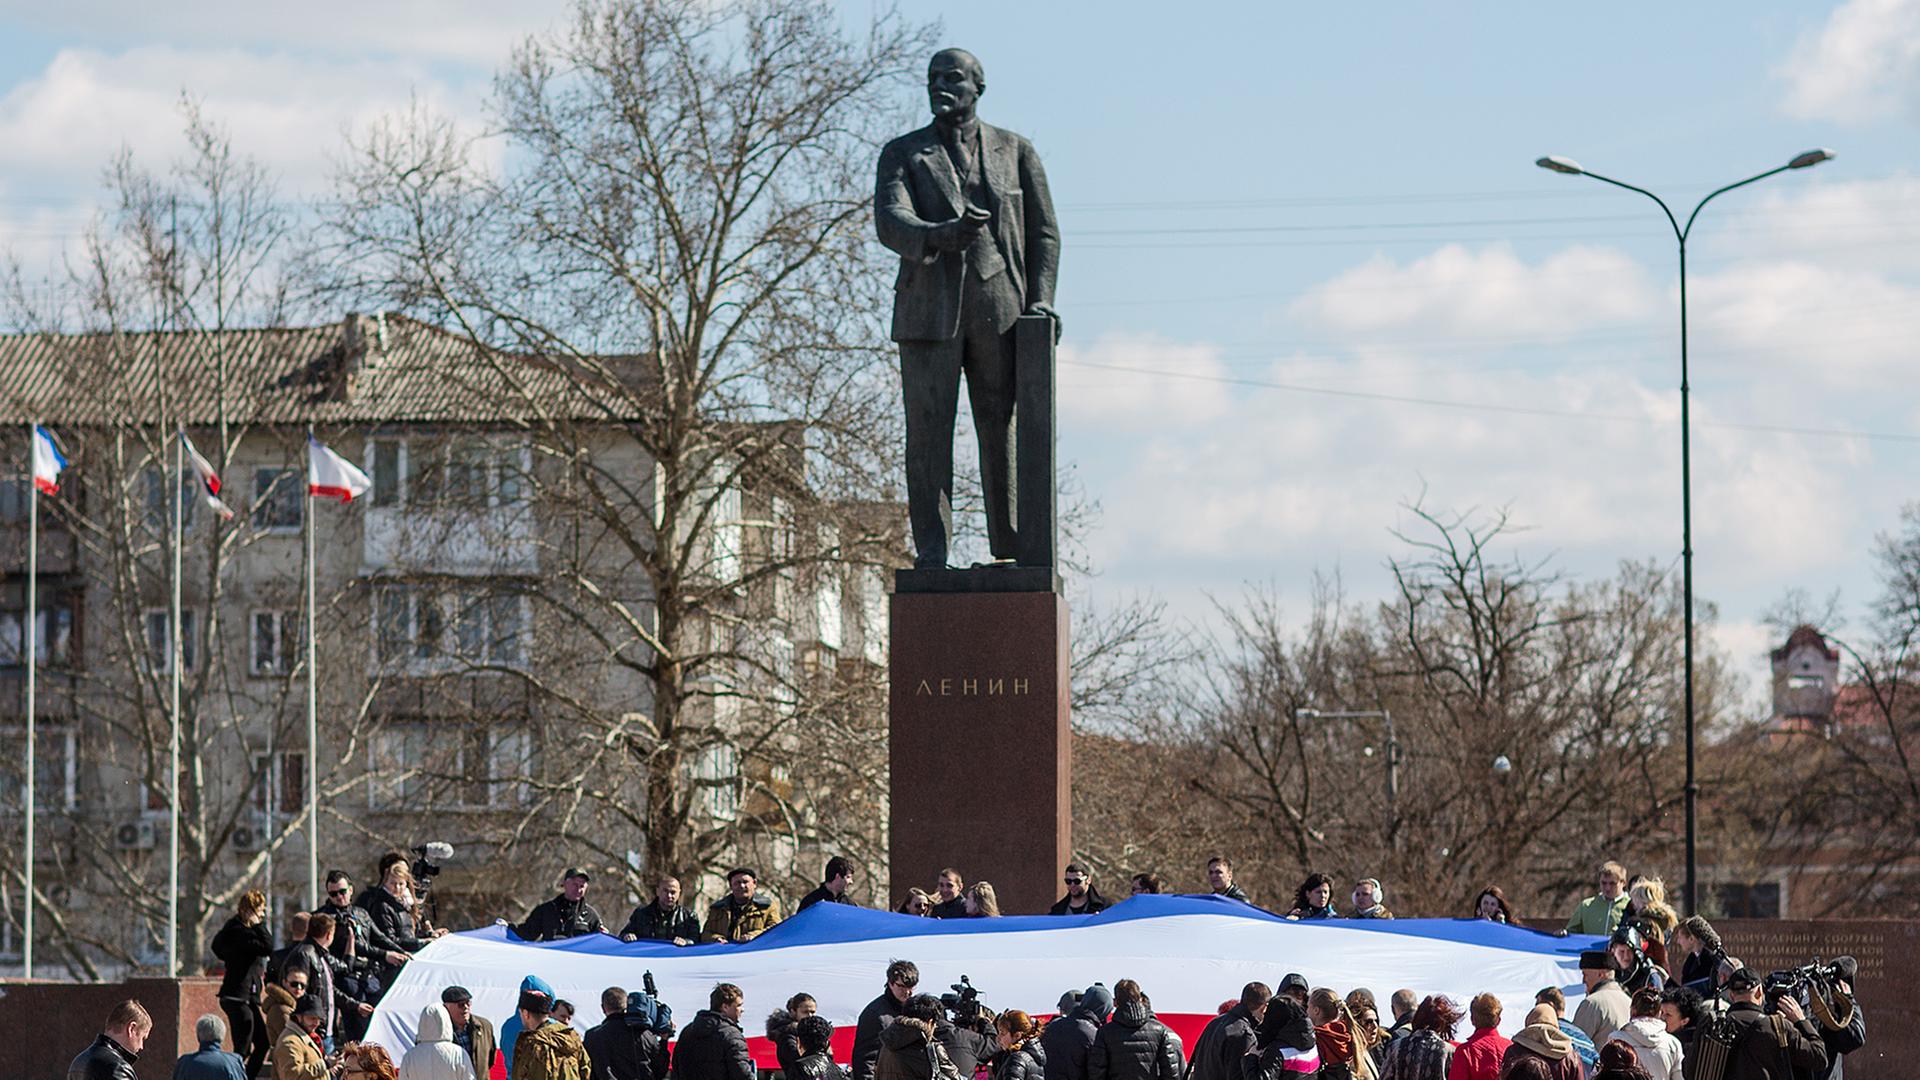 Dutzende Menschen halten am 18.03.2014 in Simferopol (Ukraine) anlässlich der Rede von Russlands Präsidenten Putin eine große russische Flagge vor dem Lenin-Denkmal in Händen.